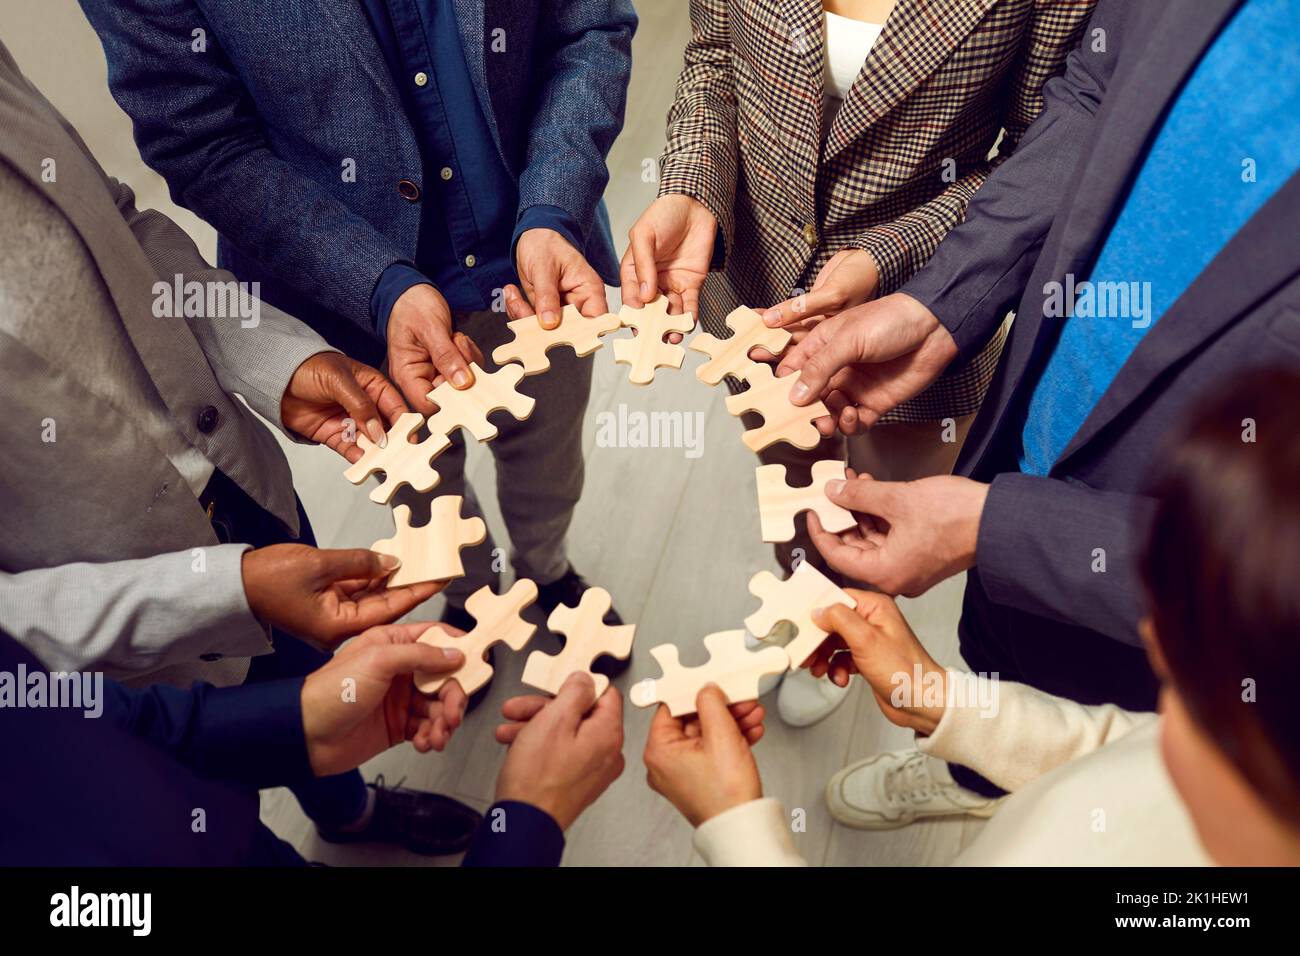 Une équipe diversifiée de gens d'affaires coopèrent et forment un cercle à partir de pièces de puzzle Banque D'Images